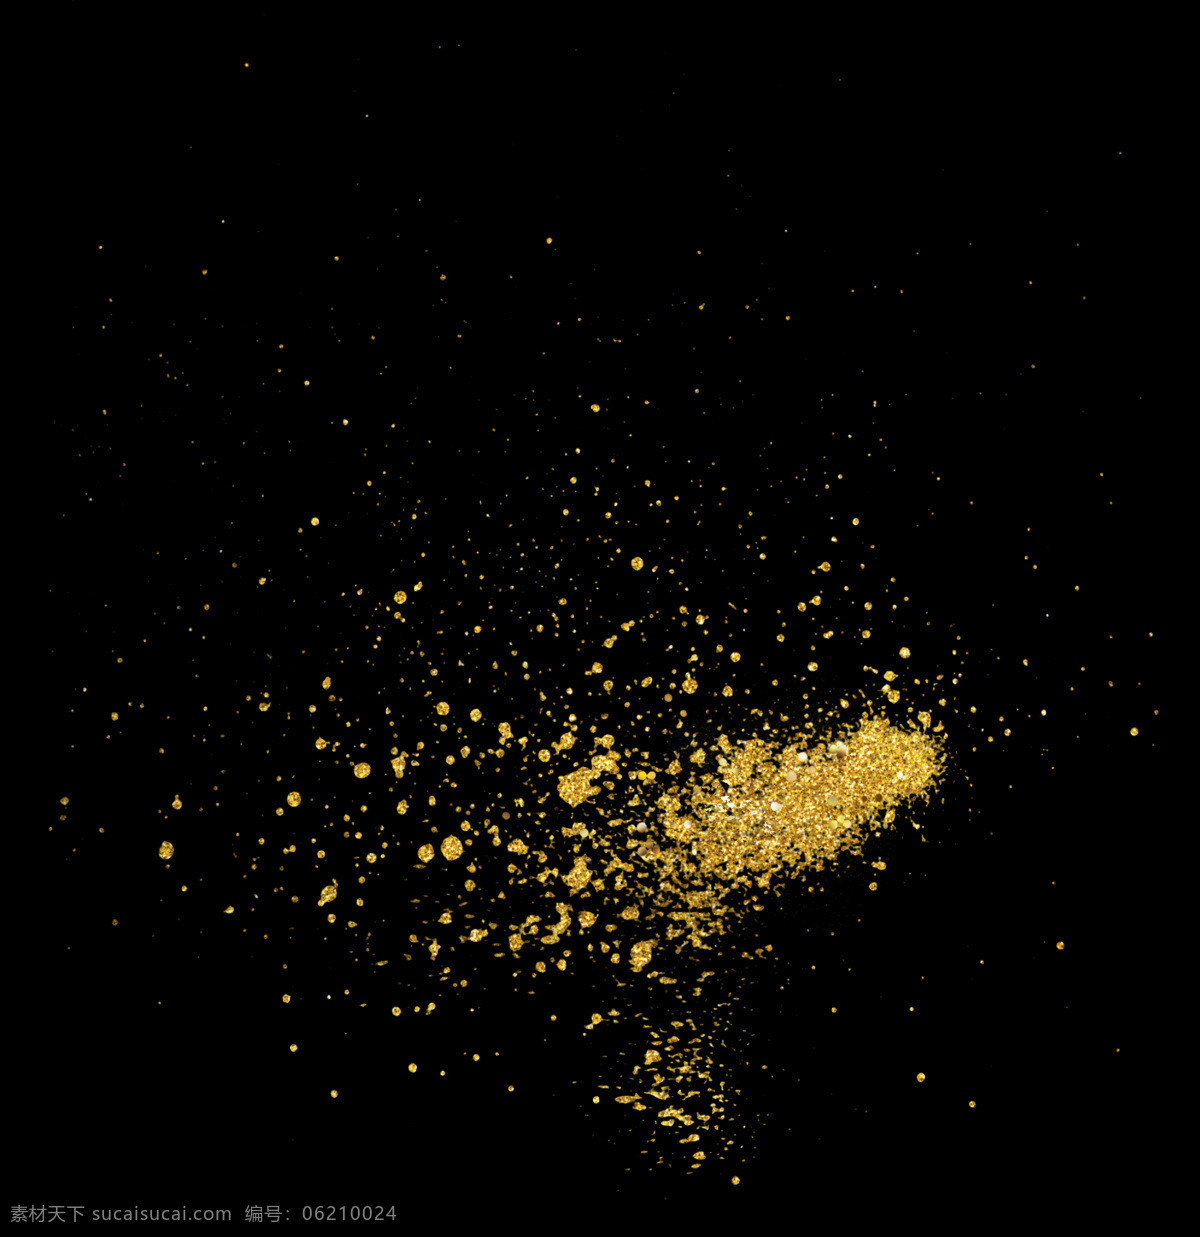 金色粒子 颗粒背景 金色背景 金色粒子尘埃 华丽金色粒子 挥洒金色粒子 金色颗粒背景 科技 宇宙 散景 星空 底纹边框 背景底纹